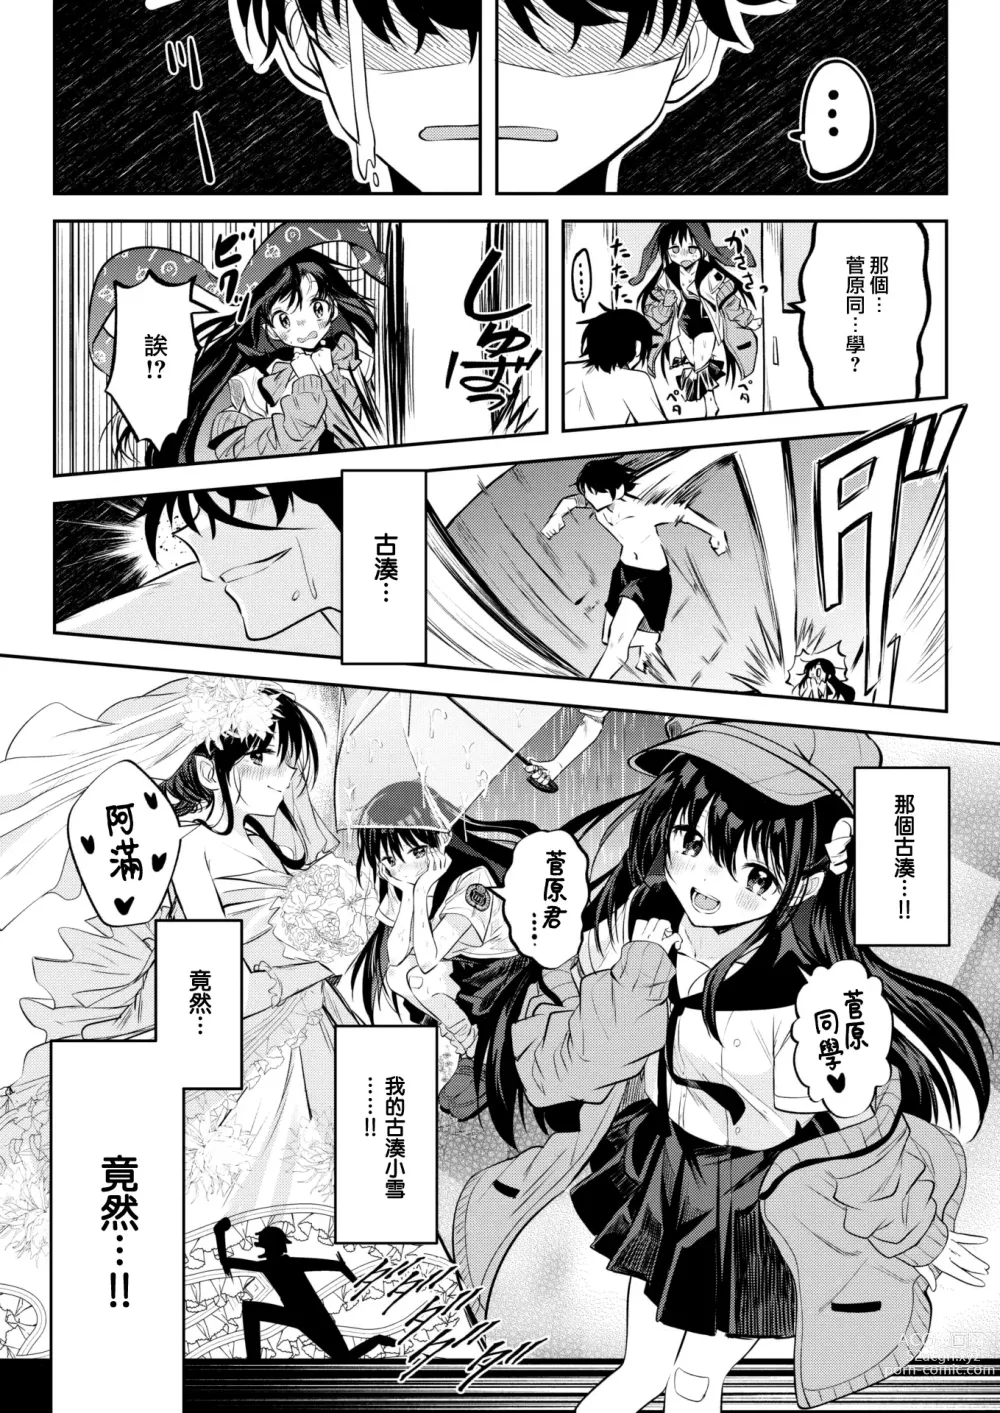 Page 10 of manga Otome no Binetsu wa Younetsu Shigoku.